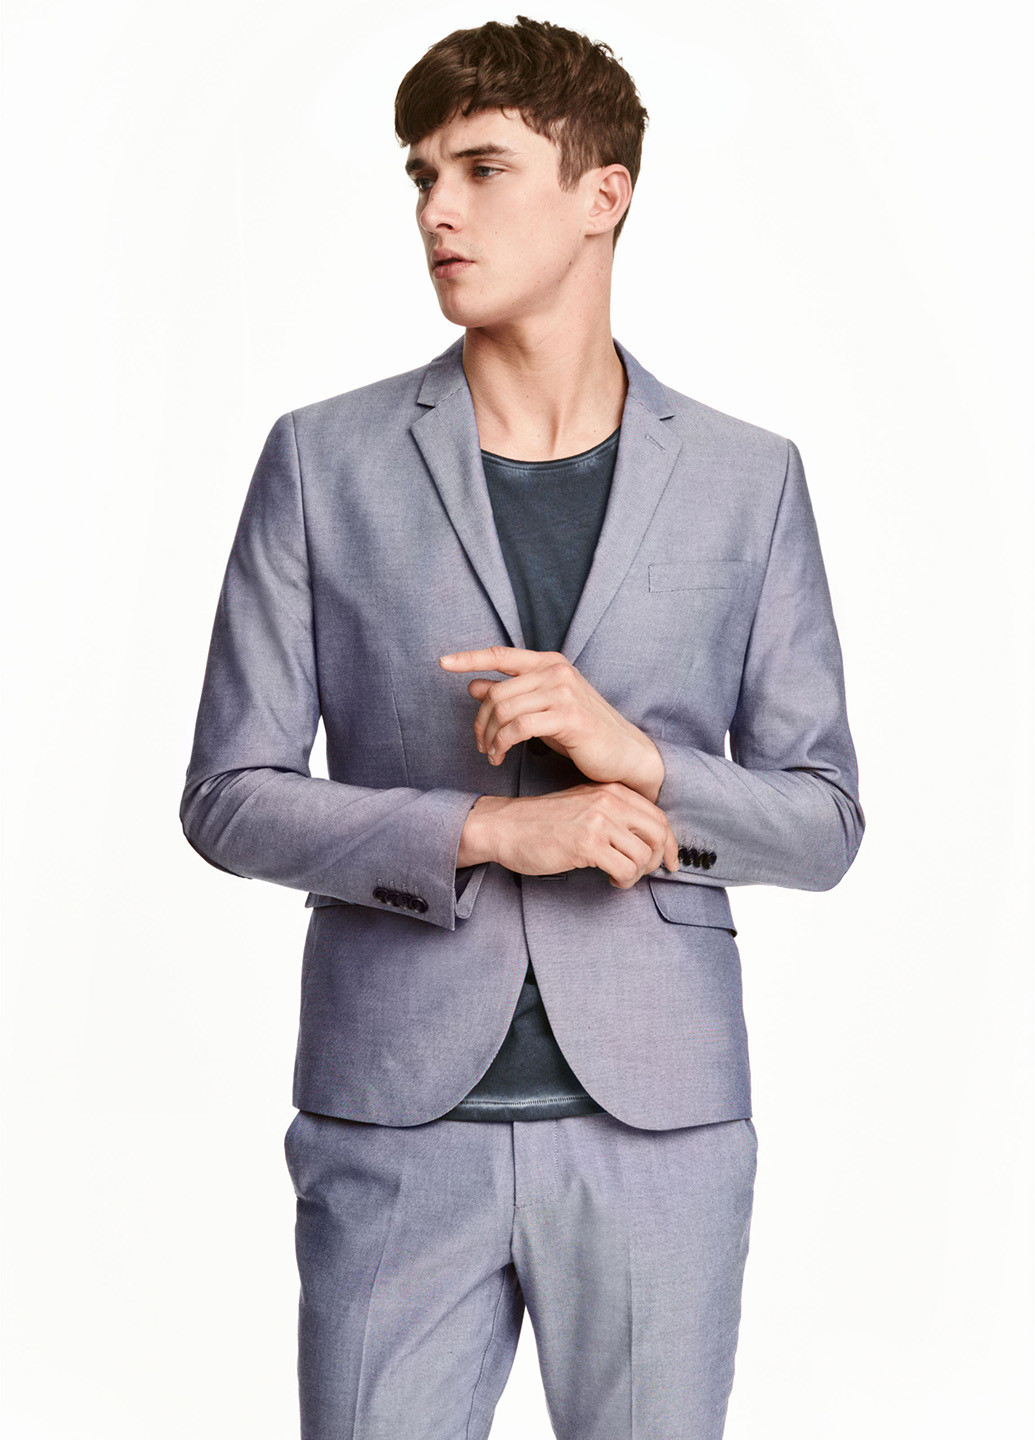 Піджак H&M меланж сіро-голубий діловий бавовна